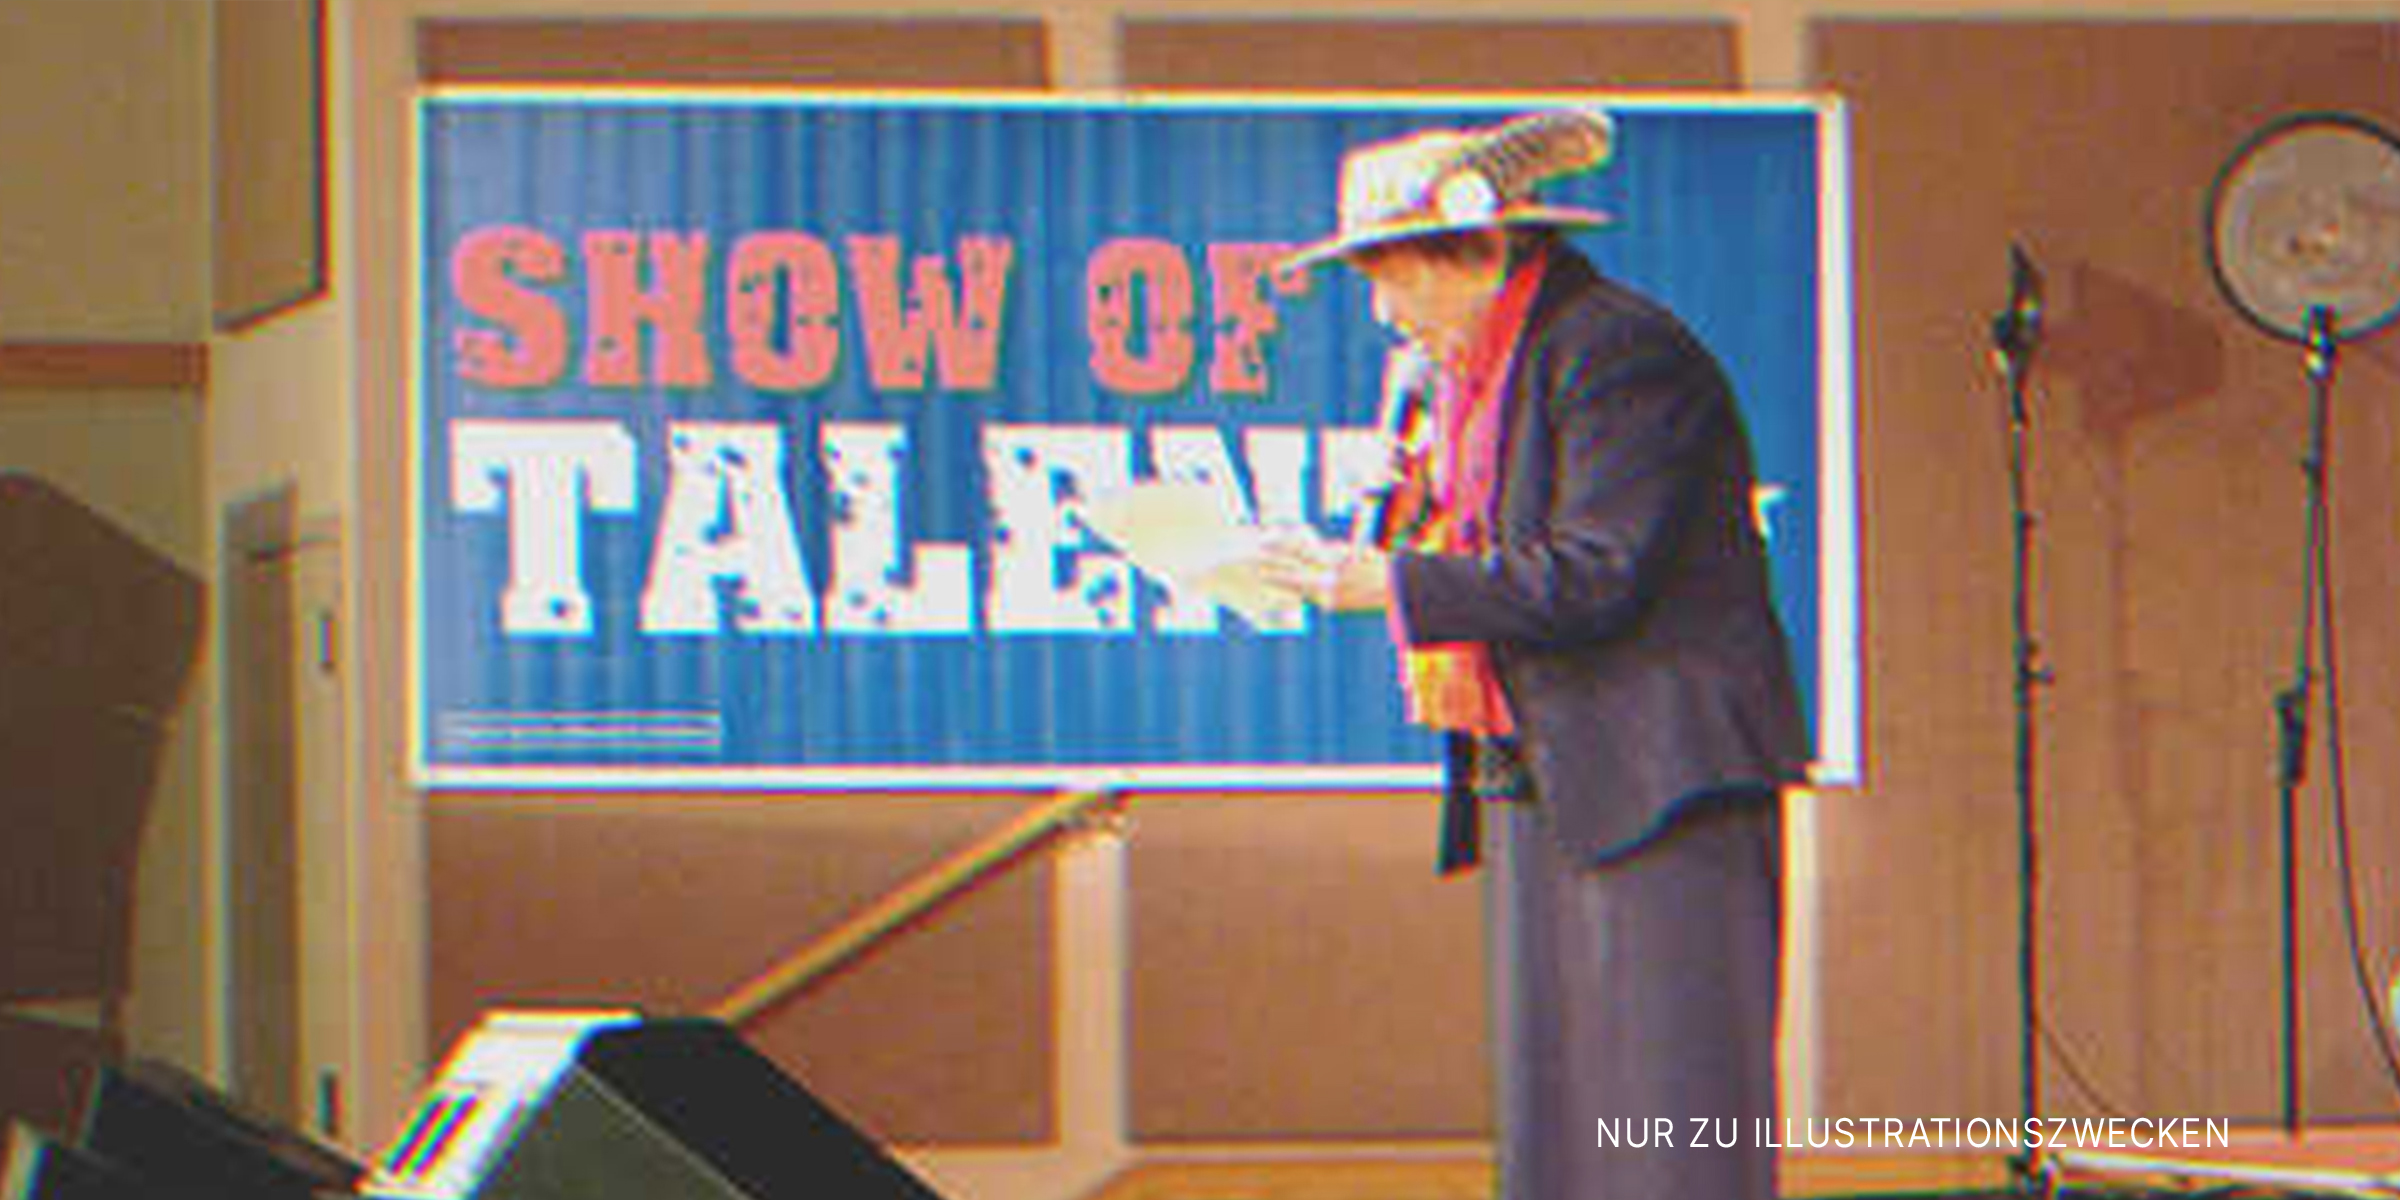 81 Jahre alte Dame auf der Bühne | Quelle: Flickr/John Edwards 2008 (CC BY-SA 2.0) 